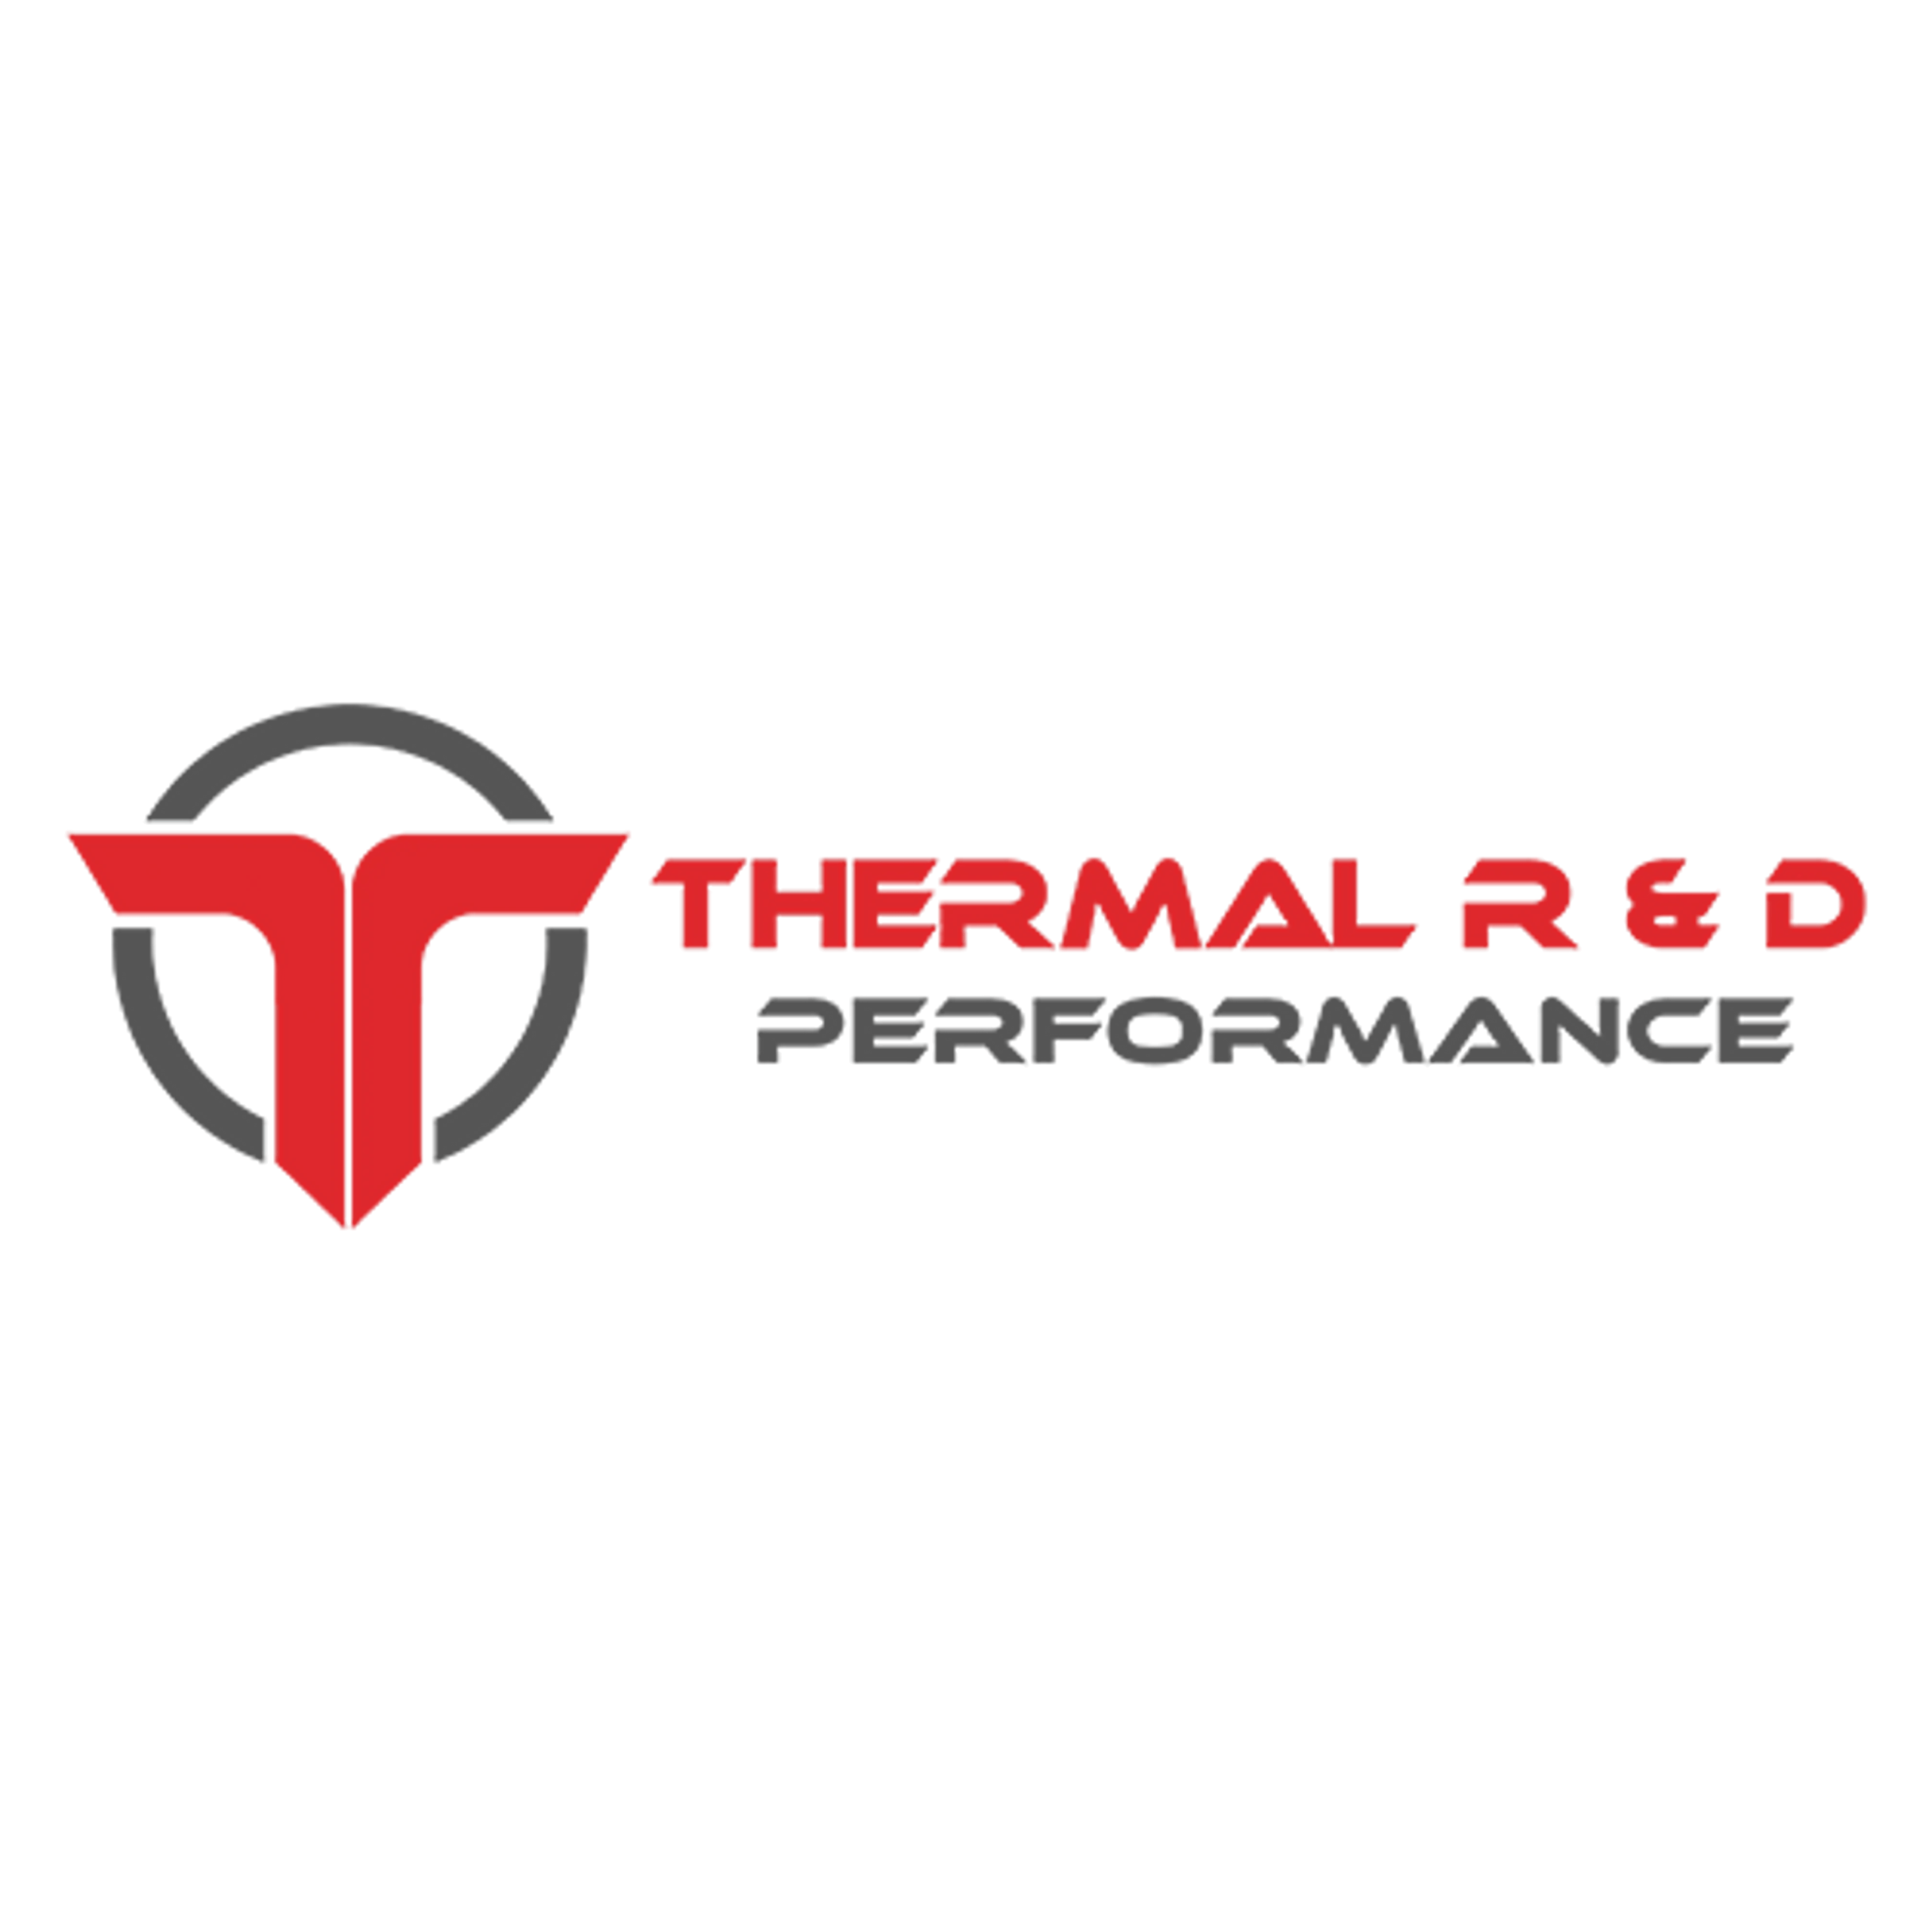 Thermal R&D